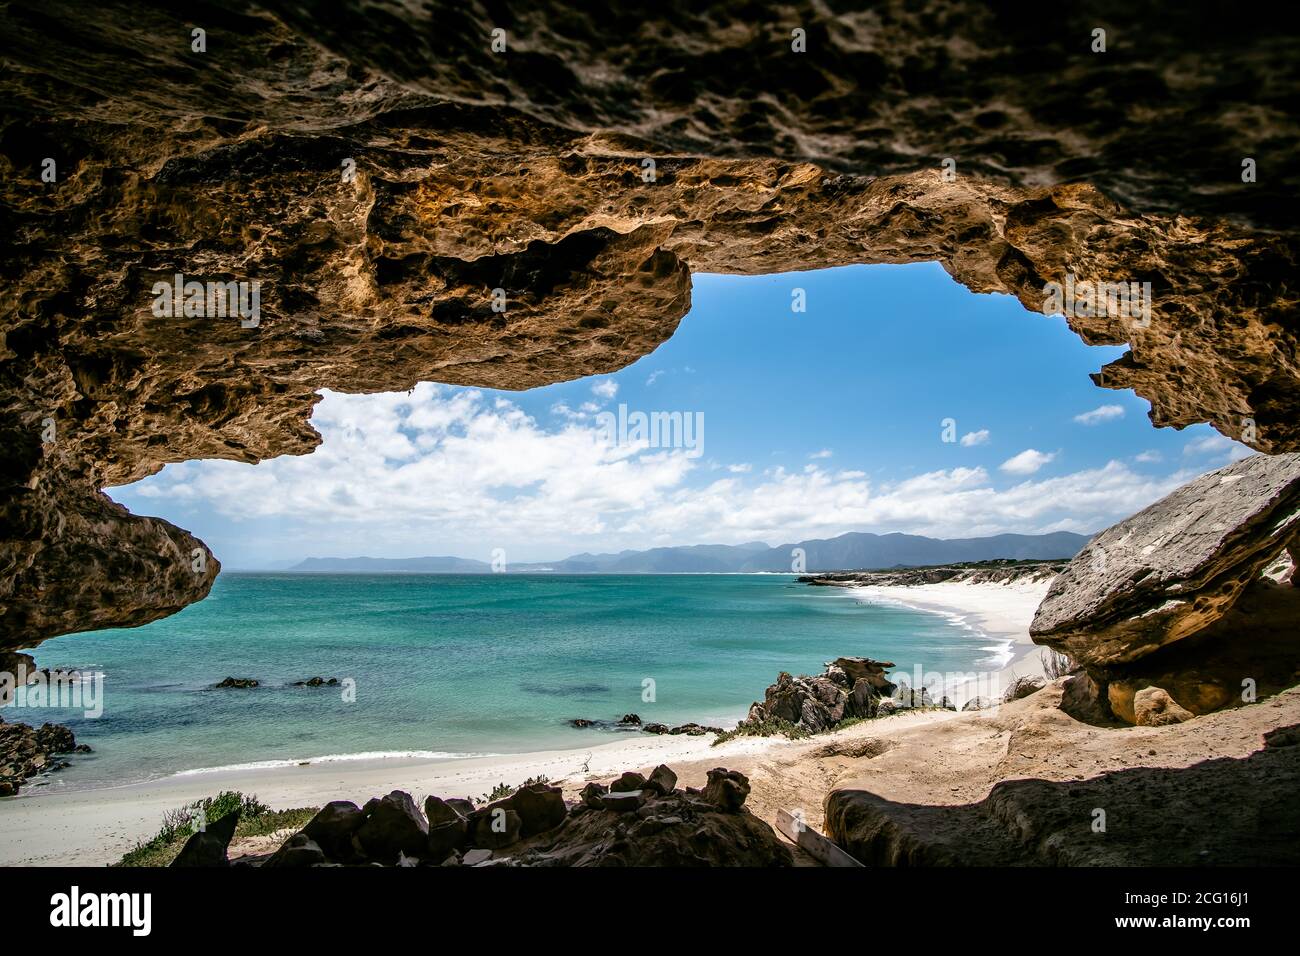 Immacolato tratto di spiaggia bianca appartata con allure acque blu, sparato dalla grande grotta, bella giornata di sole Foto Stock